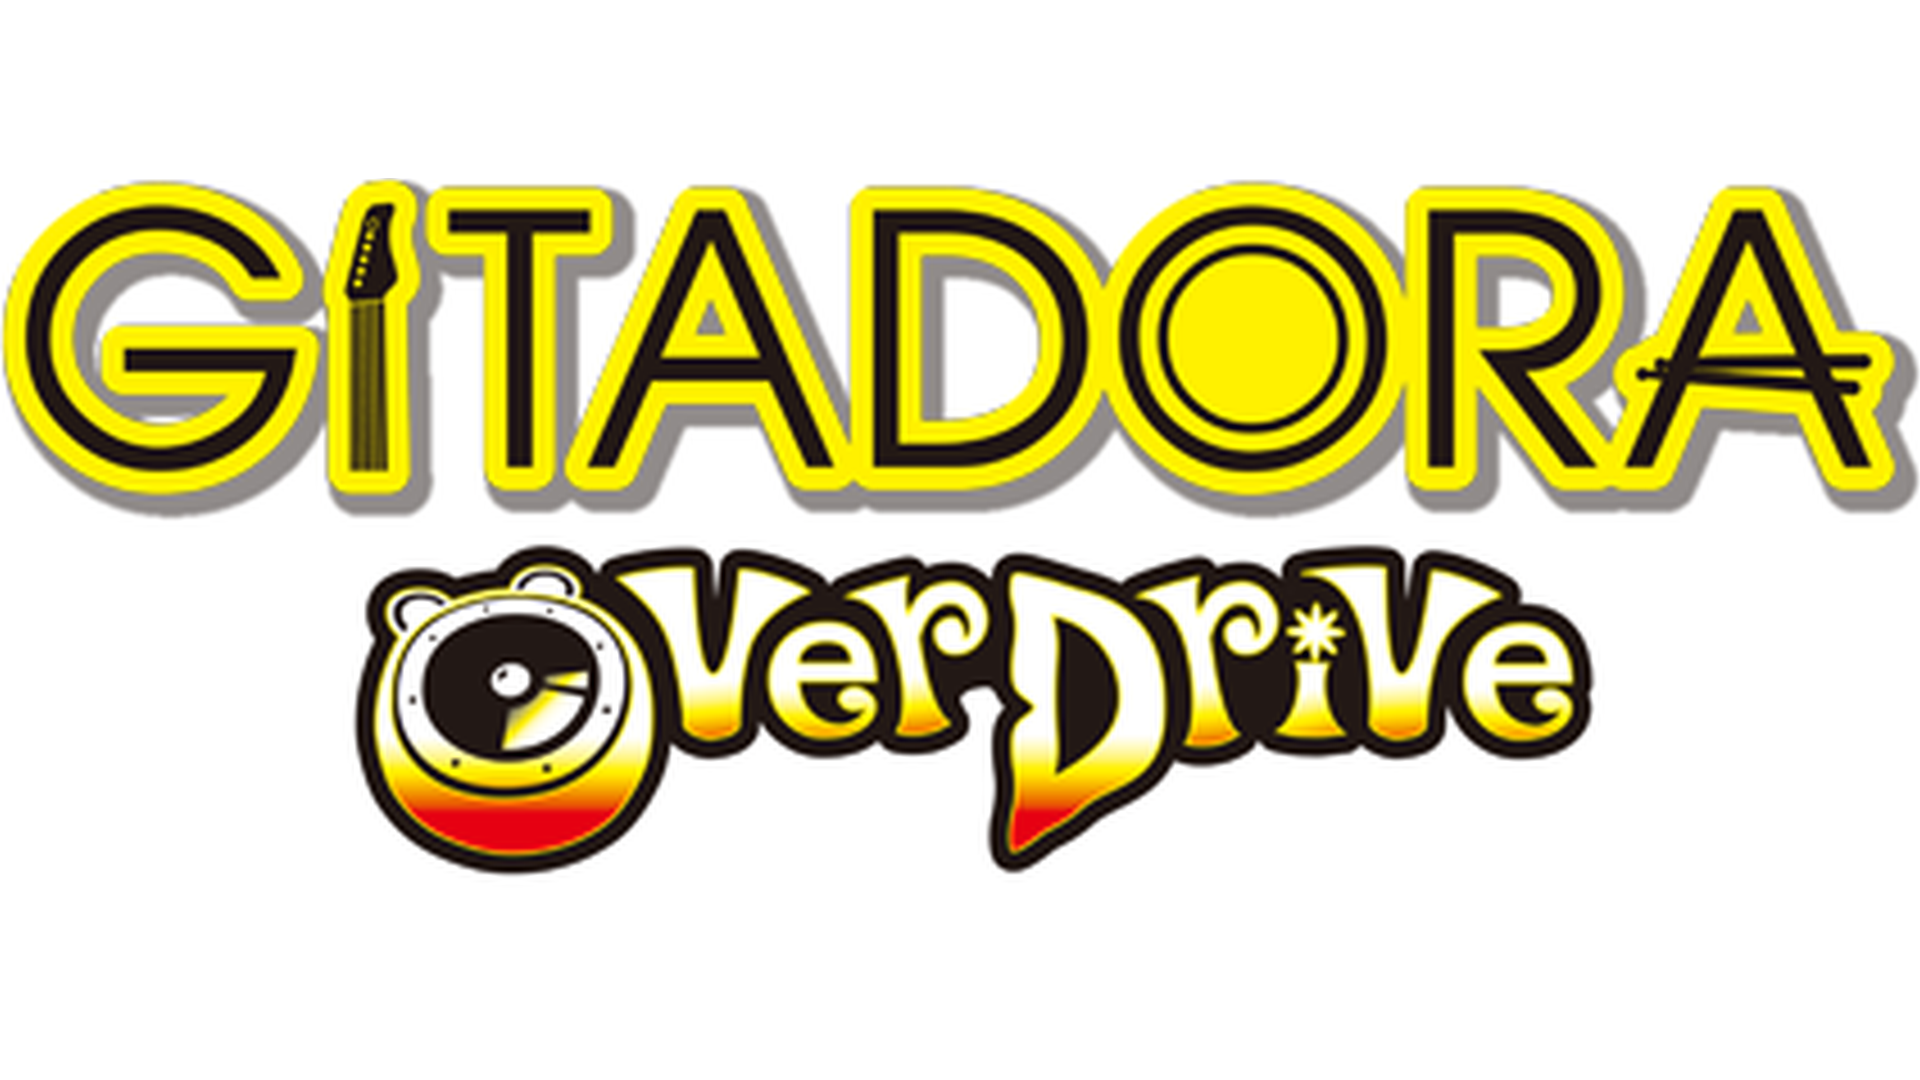 GITADORA Overdrive Logo